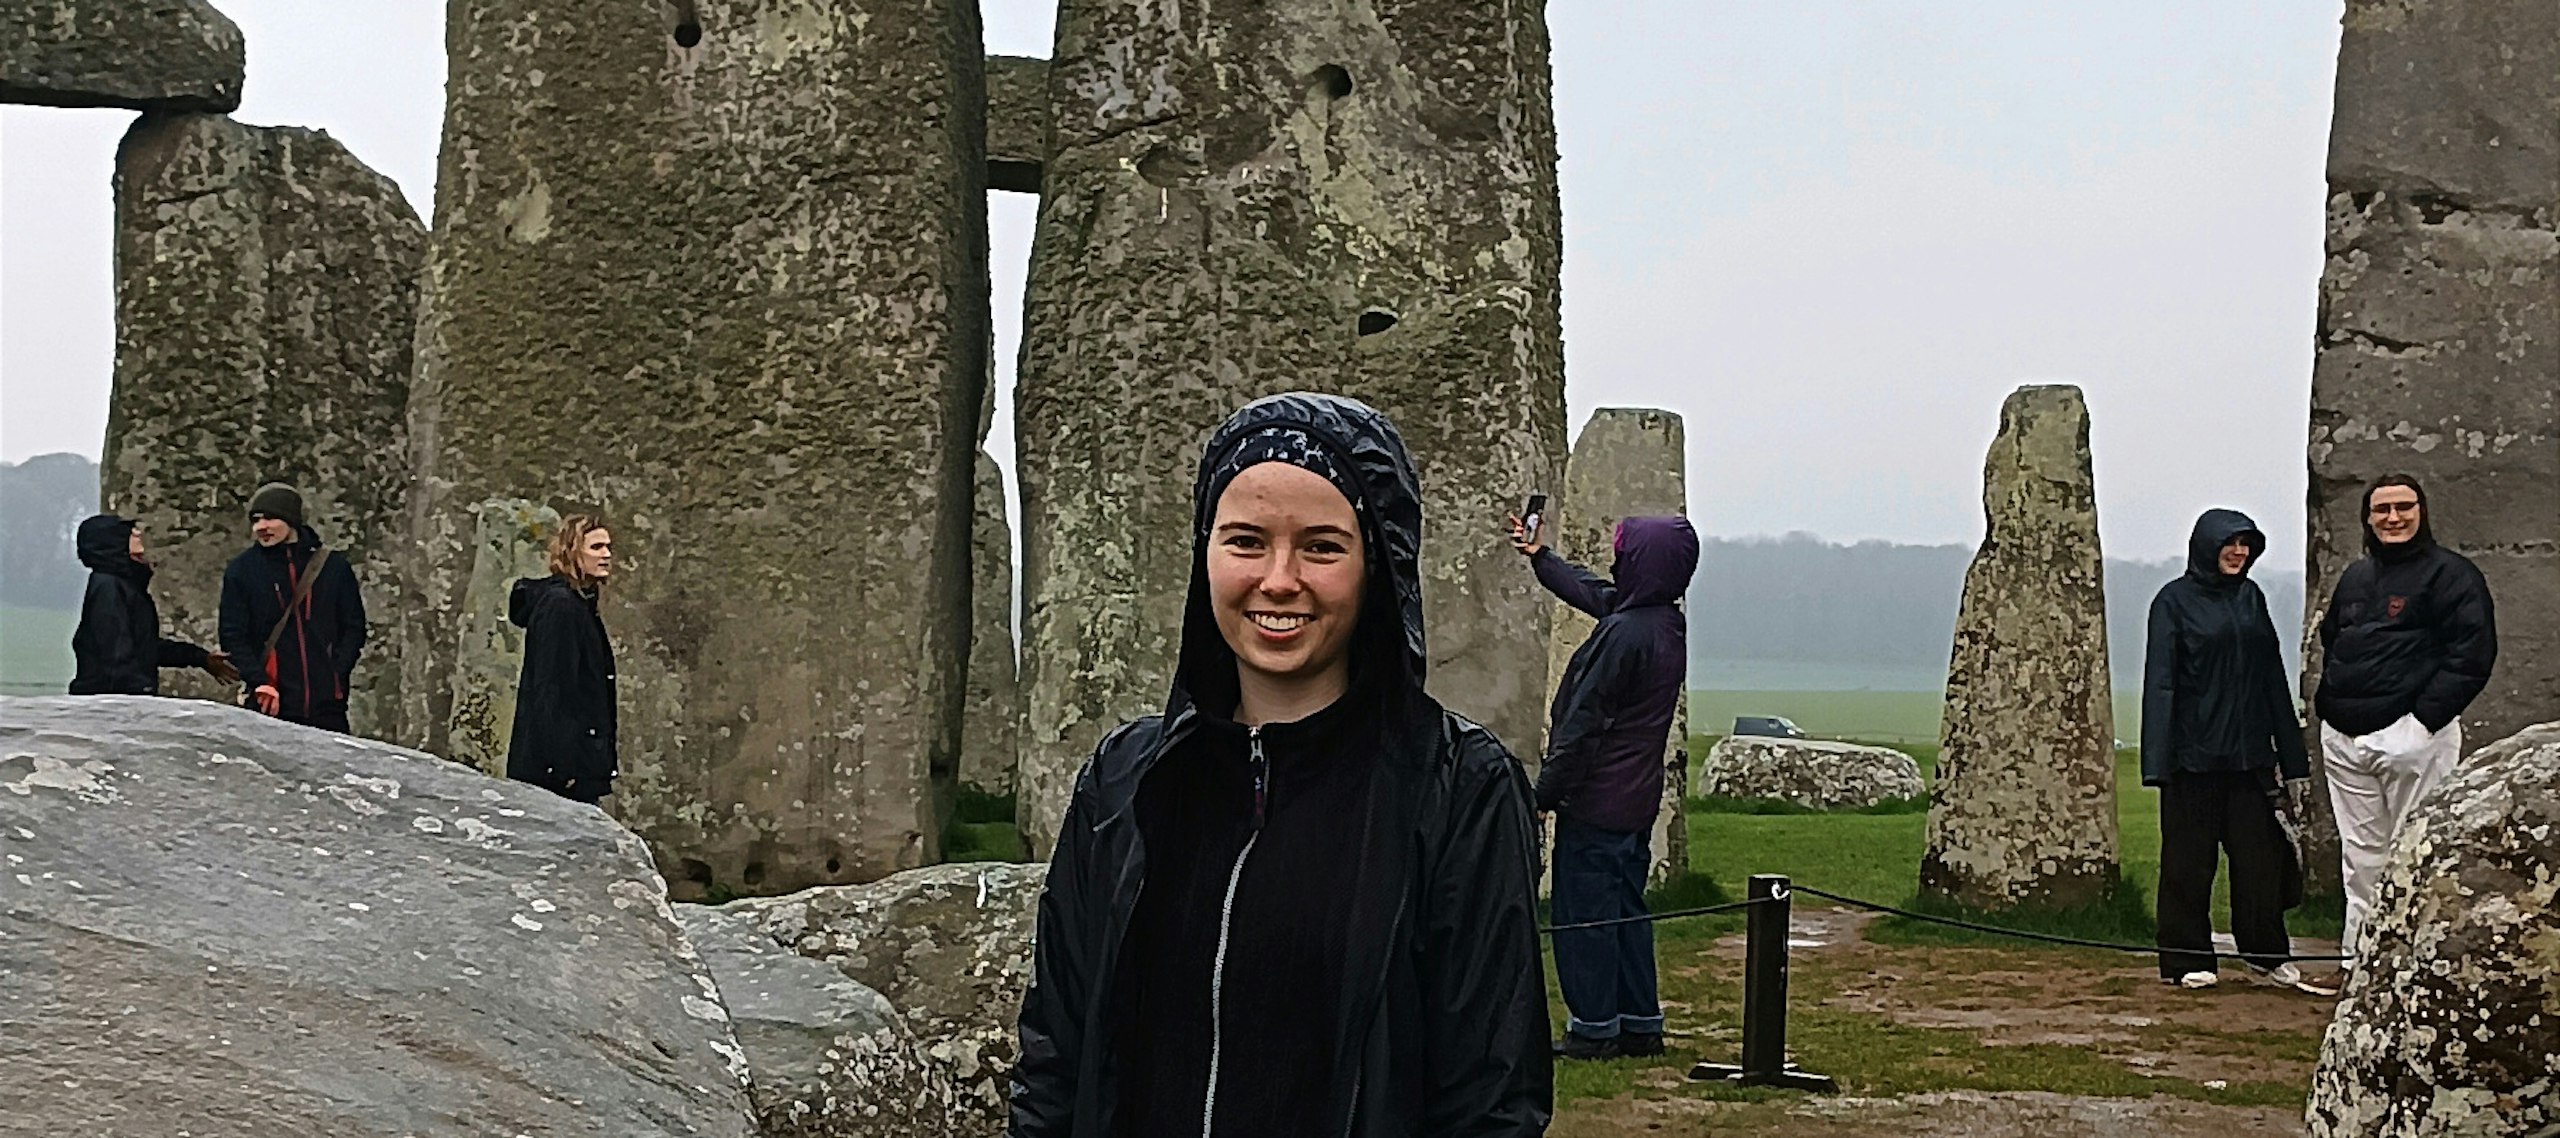 Fotka z výletu na Stonehenge, kde jsme se jako skupina archeologů mohli i procházet mezi kameny. Nebyl by to pravý archeologický výlet v Anglii, kdybychom nezmokli.